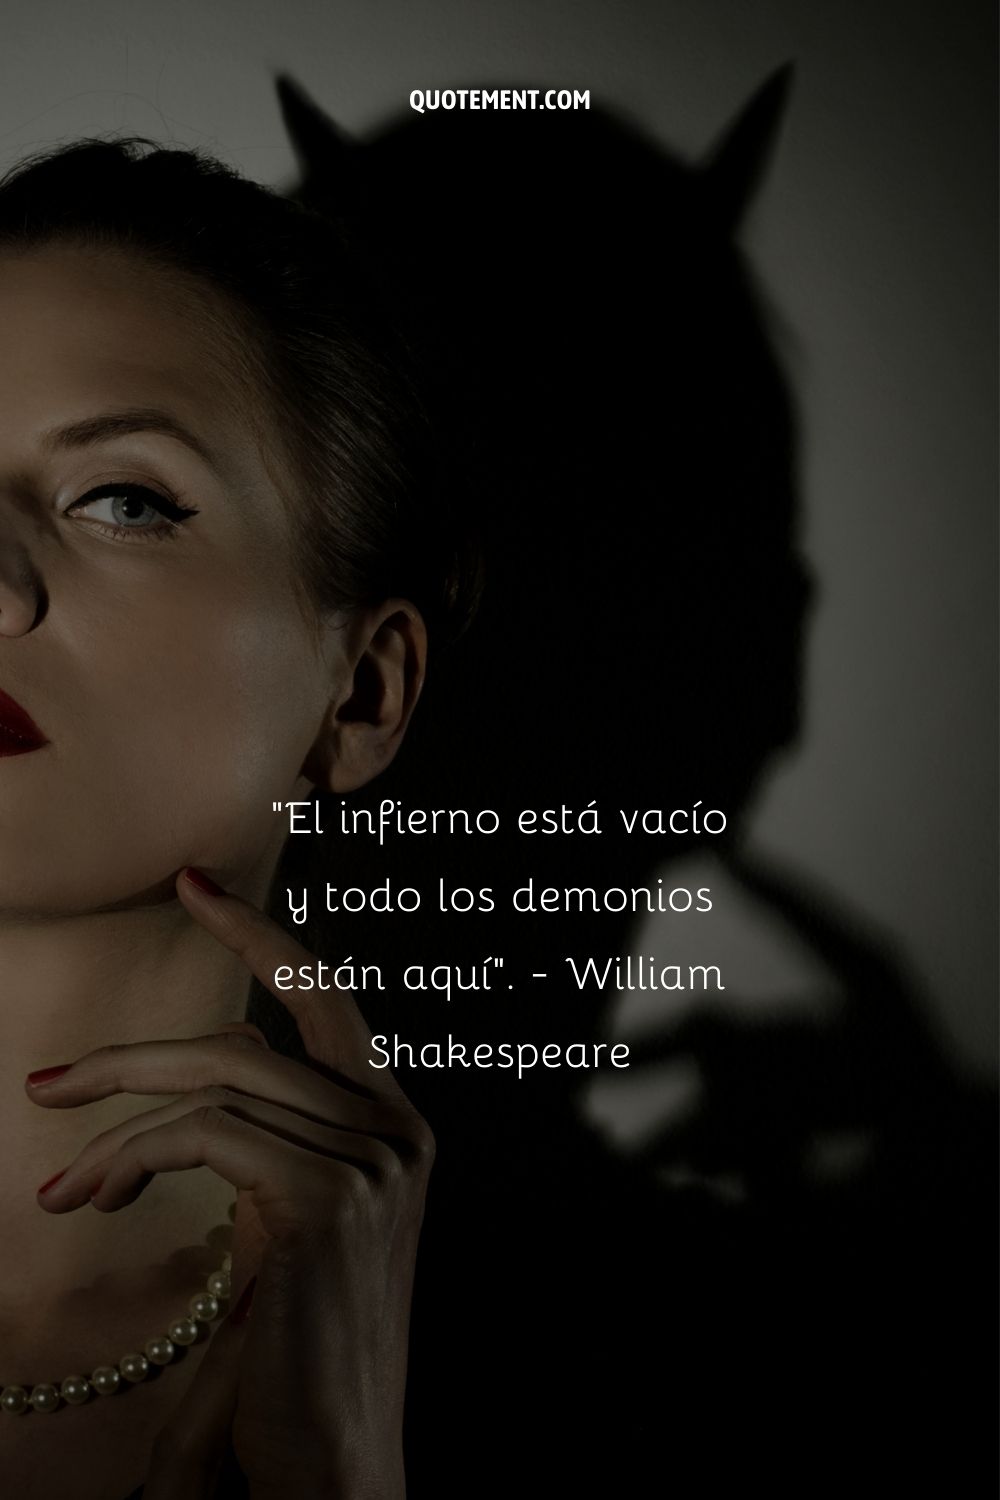 "El infierno está vacío y todos los demonios están aquí". - William Shakespeare